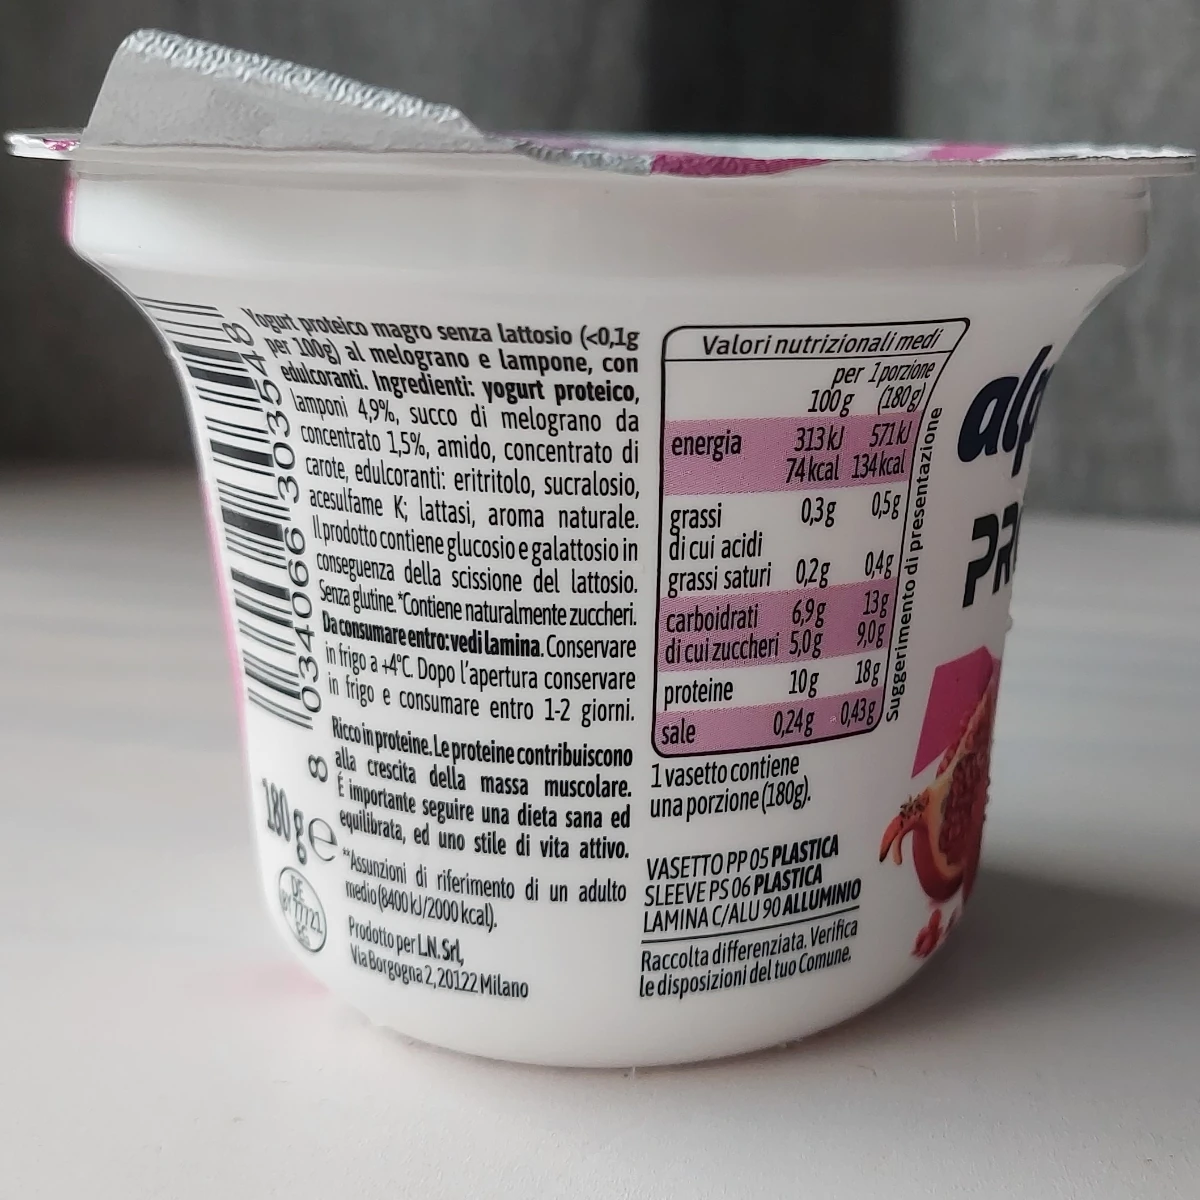 alpli-pro-18-high-protein-yogurt-proteico-ins-melograno-lampone-valori-nutrizionali